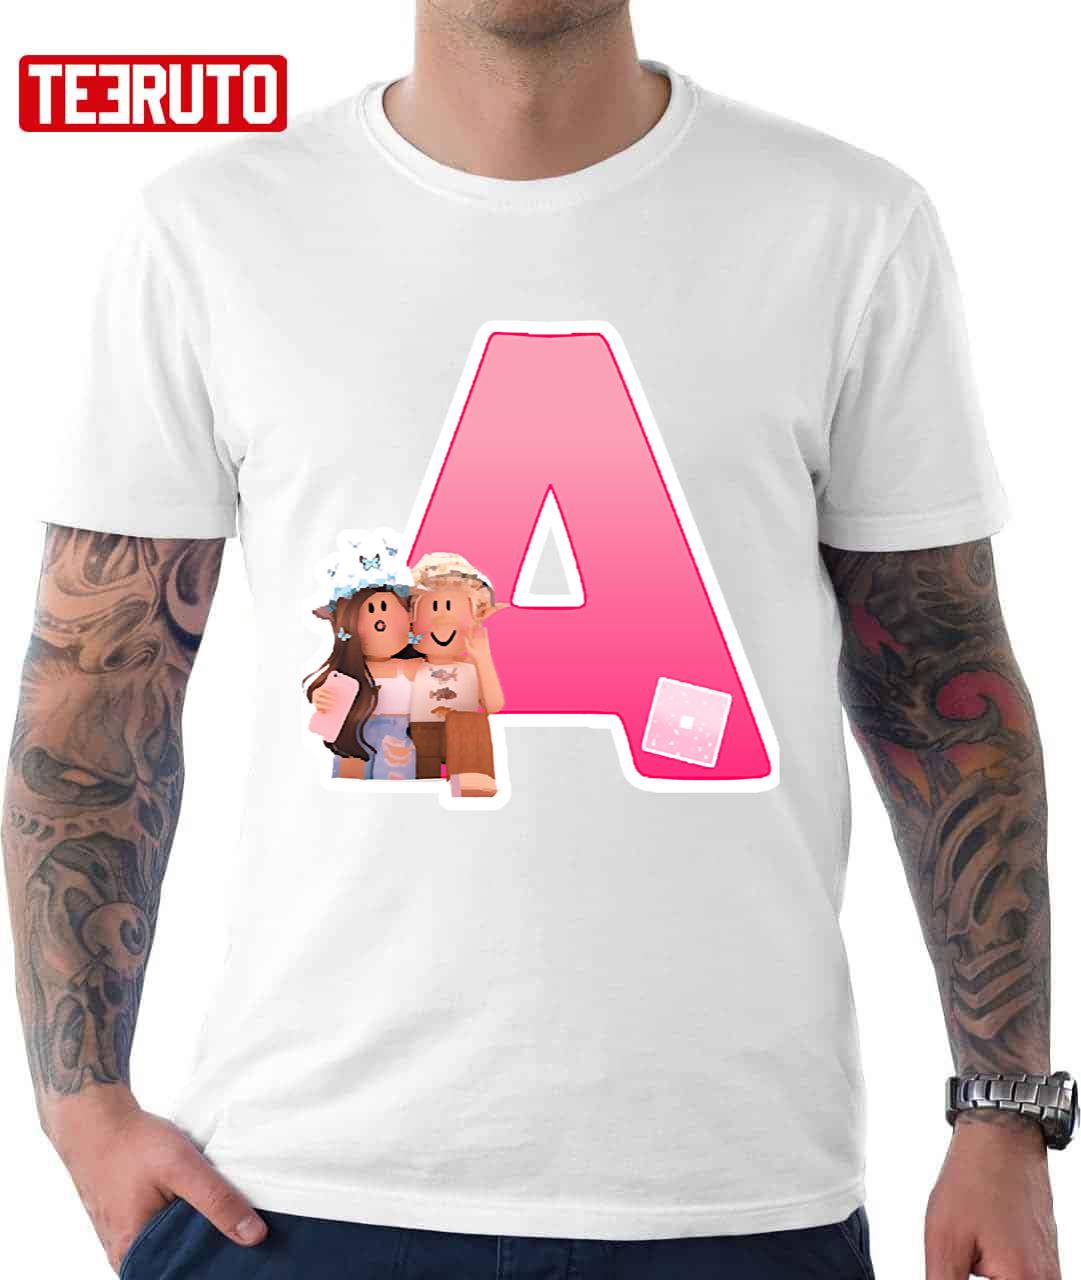 Aesthetic Roblox Girl Avatars Character Unisex T-Shirt - Teeruto